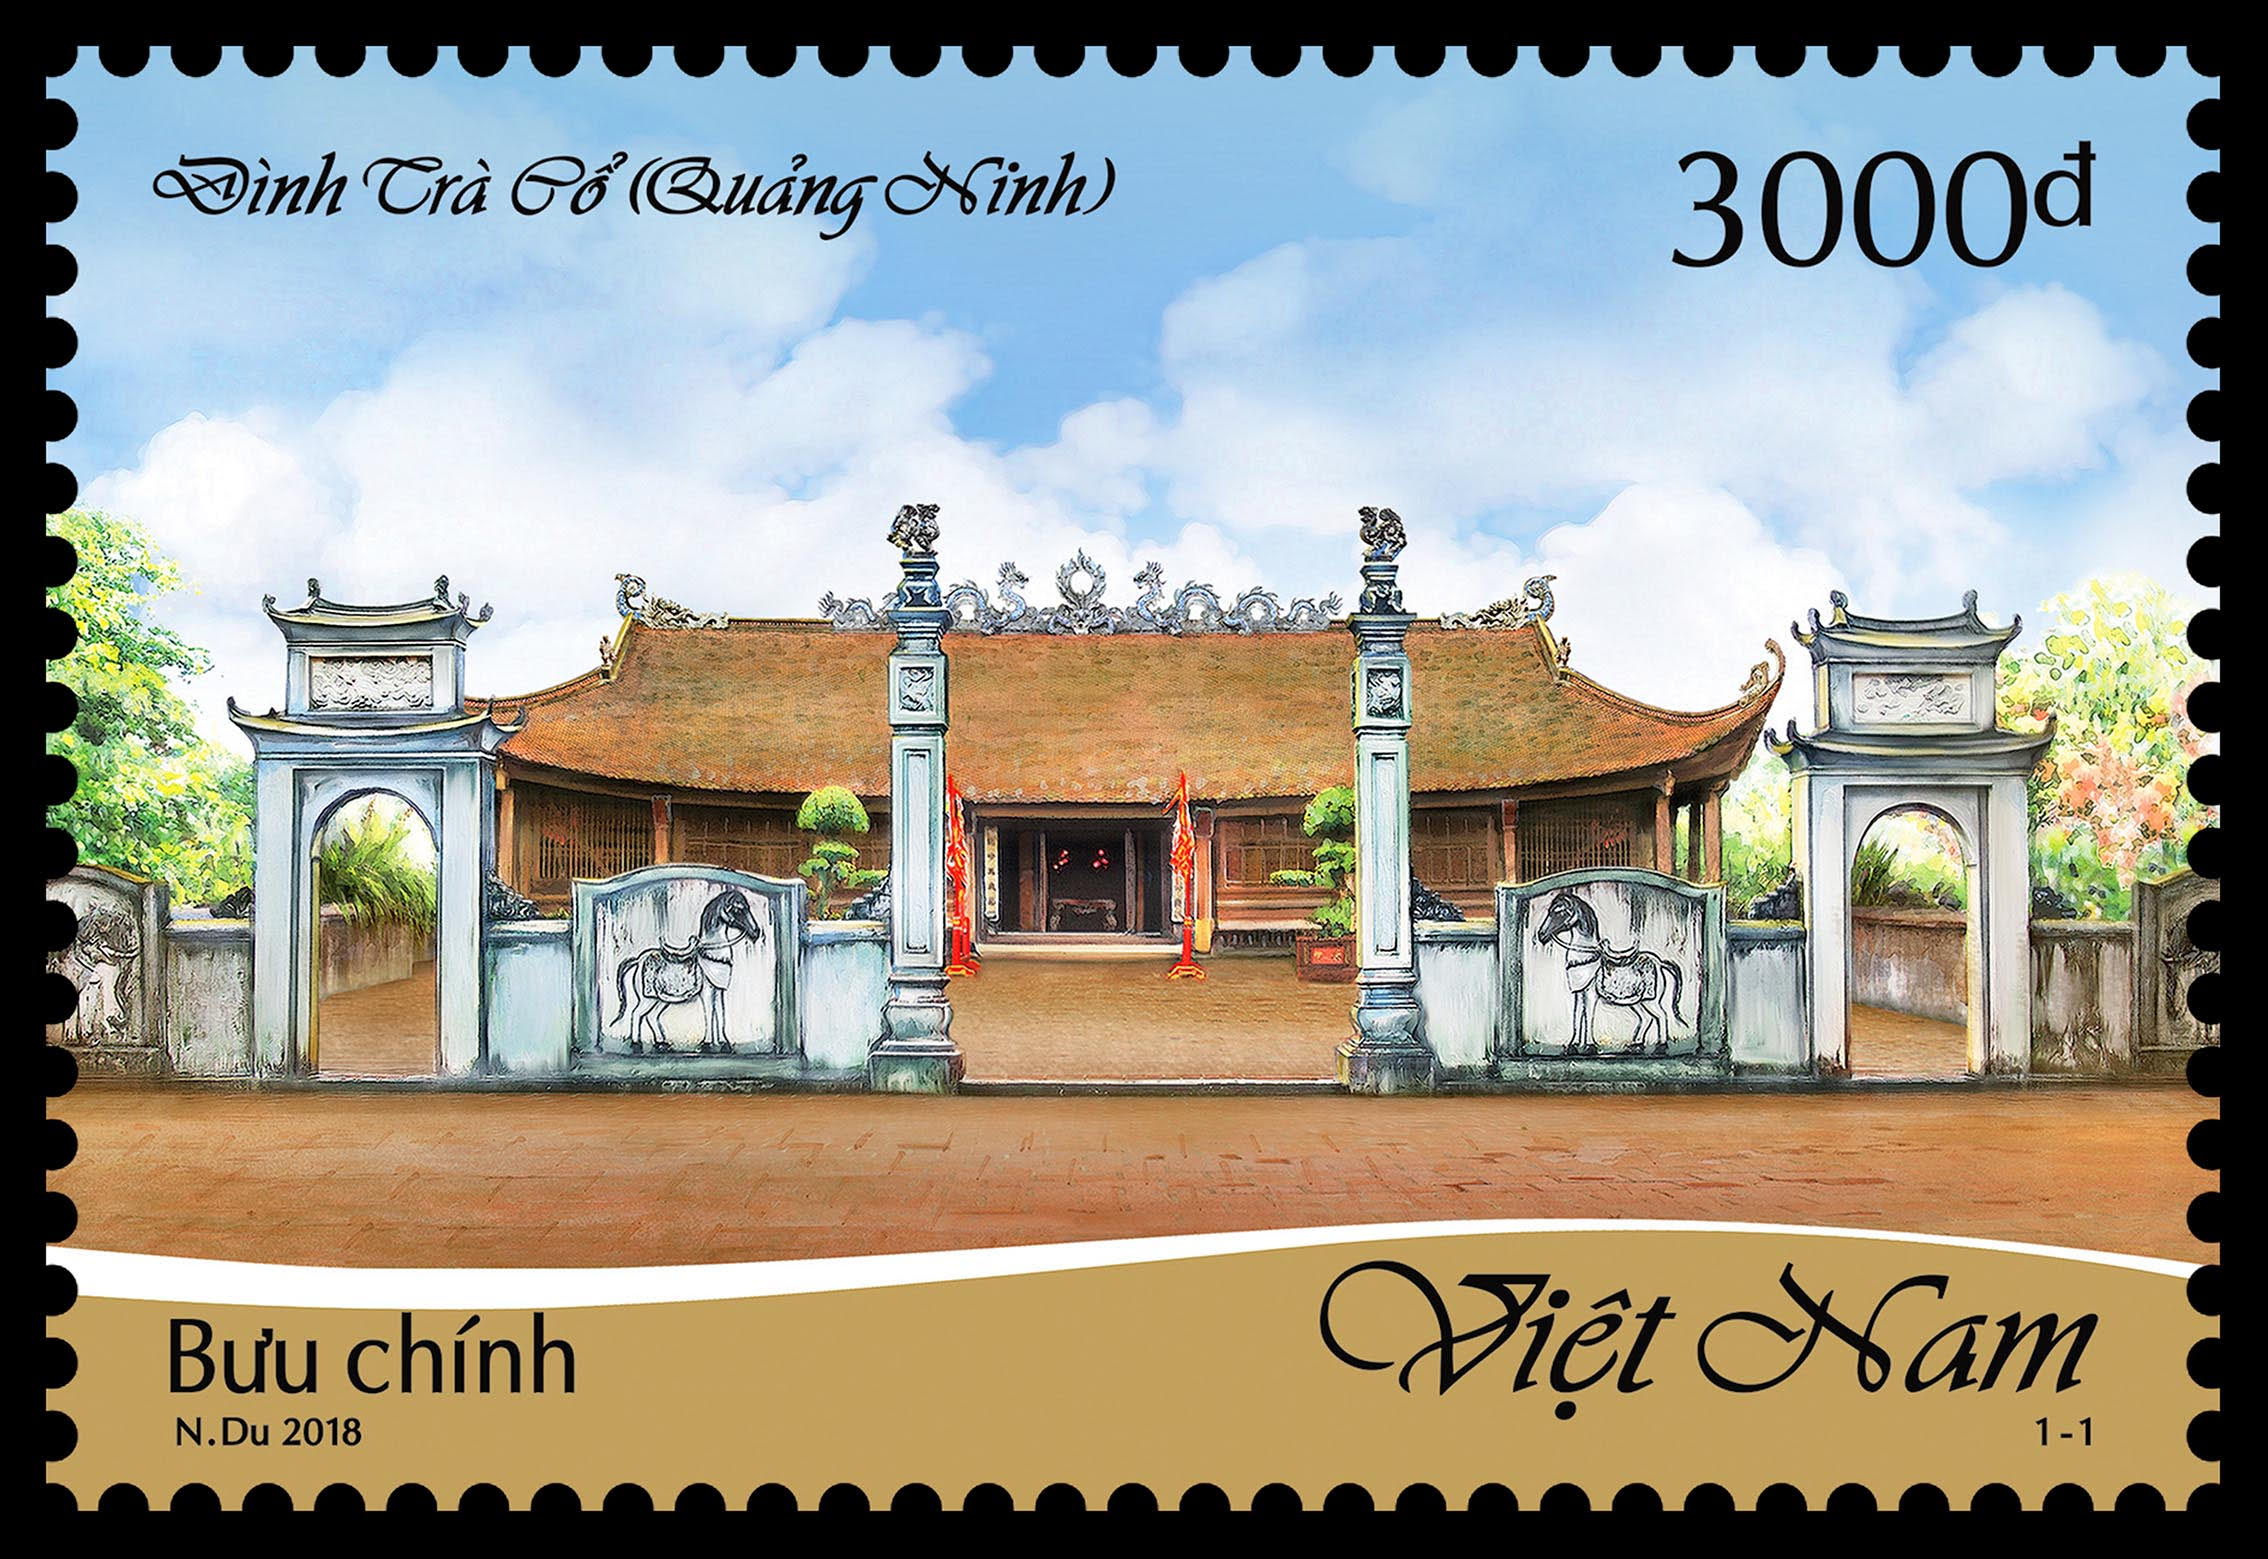 Hình ảnh Đình Trà Cổ (TP Móng Cái) trên con tem bưu chính.